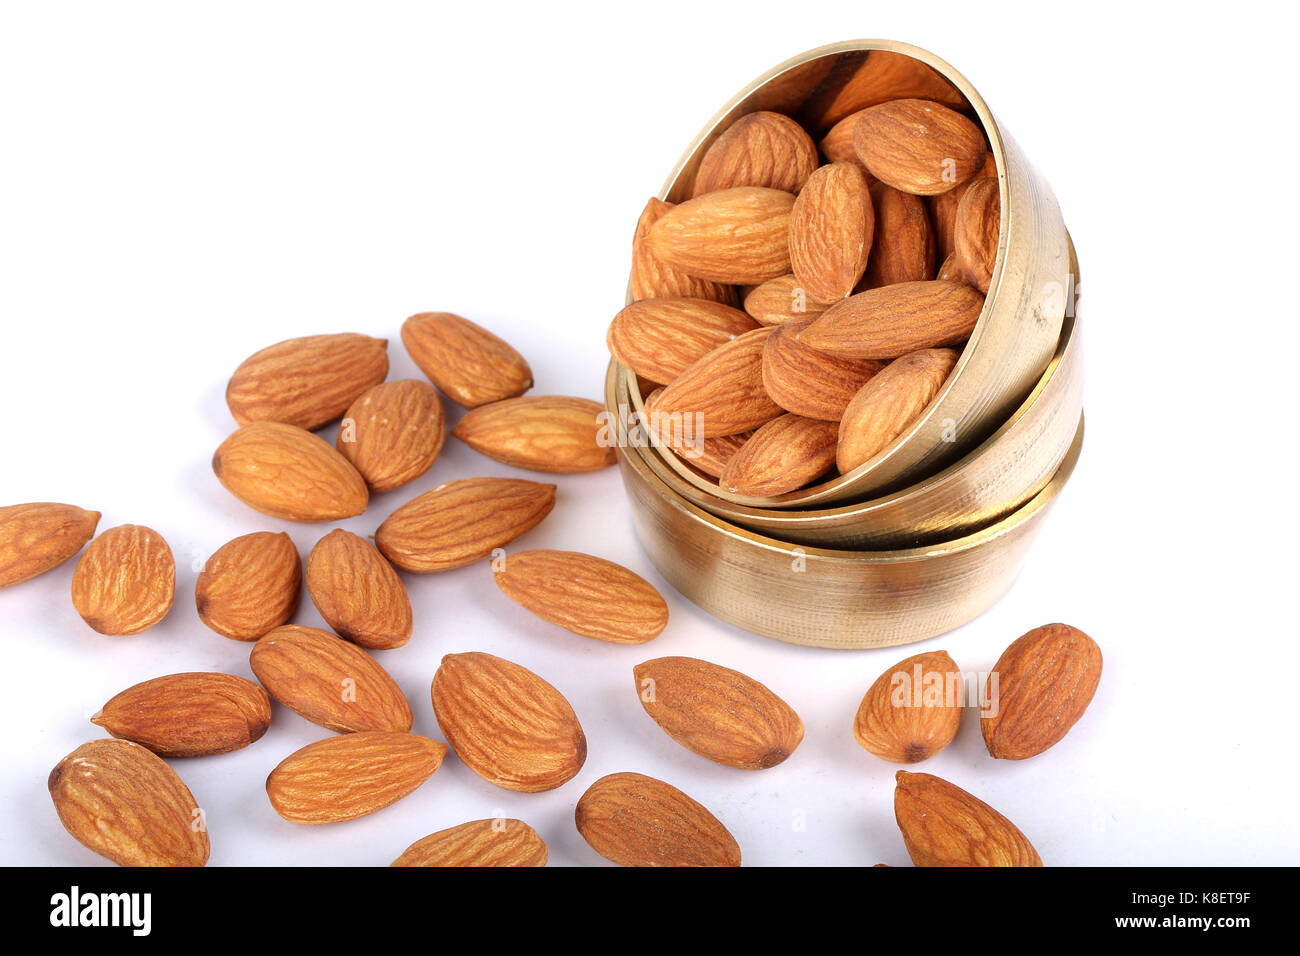 almonds, almonds in white Stock Photo